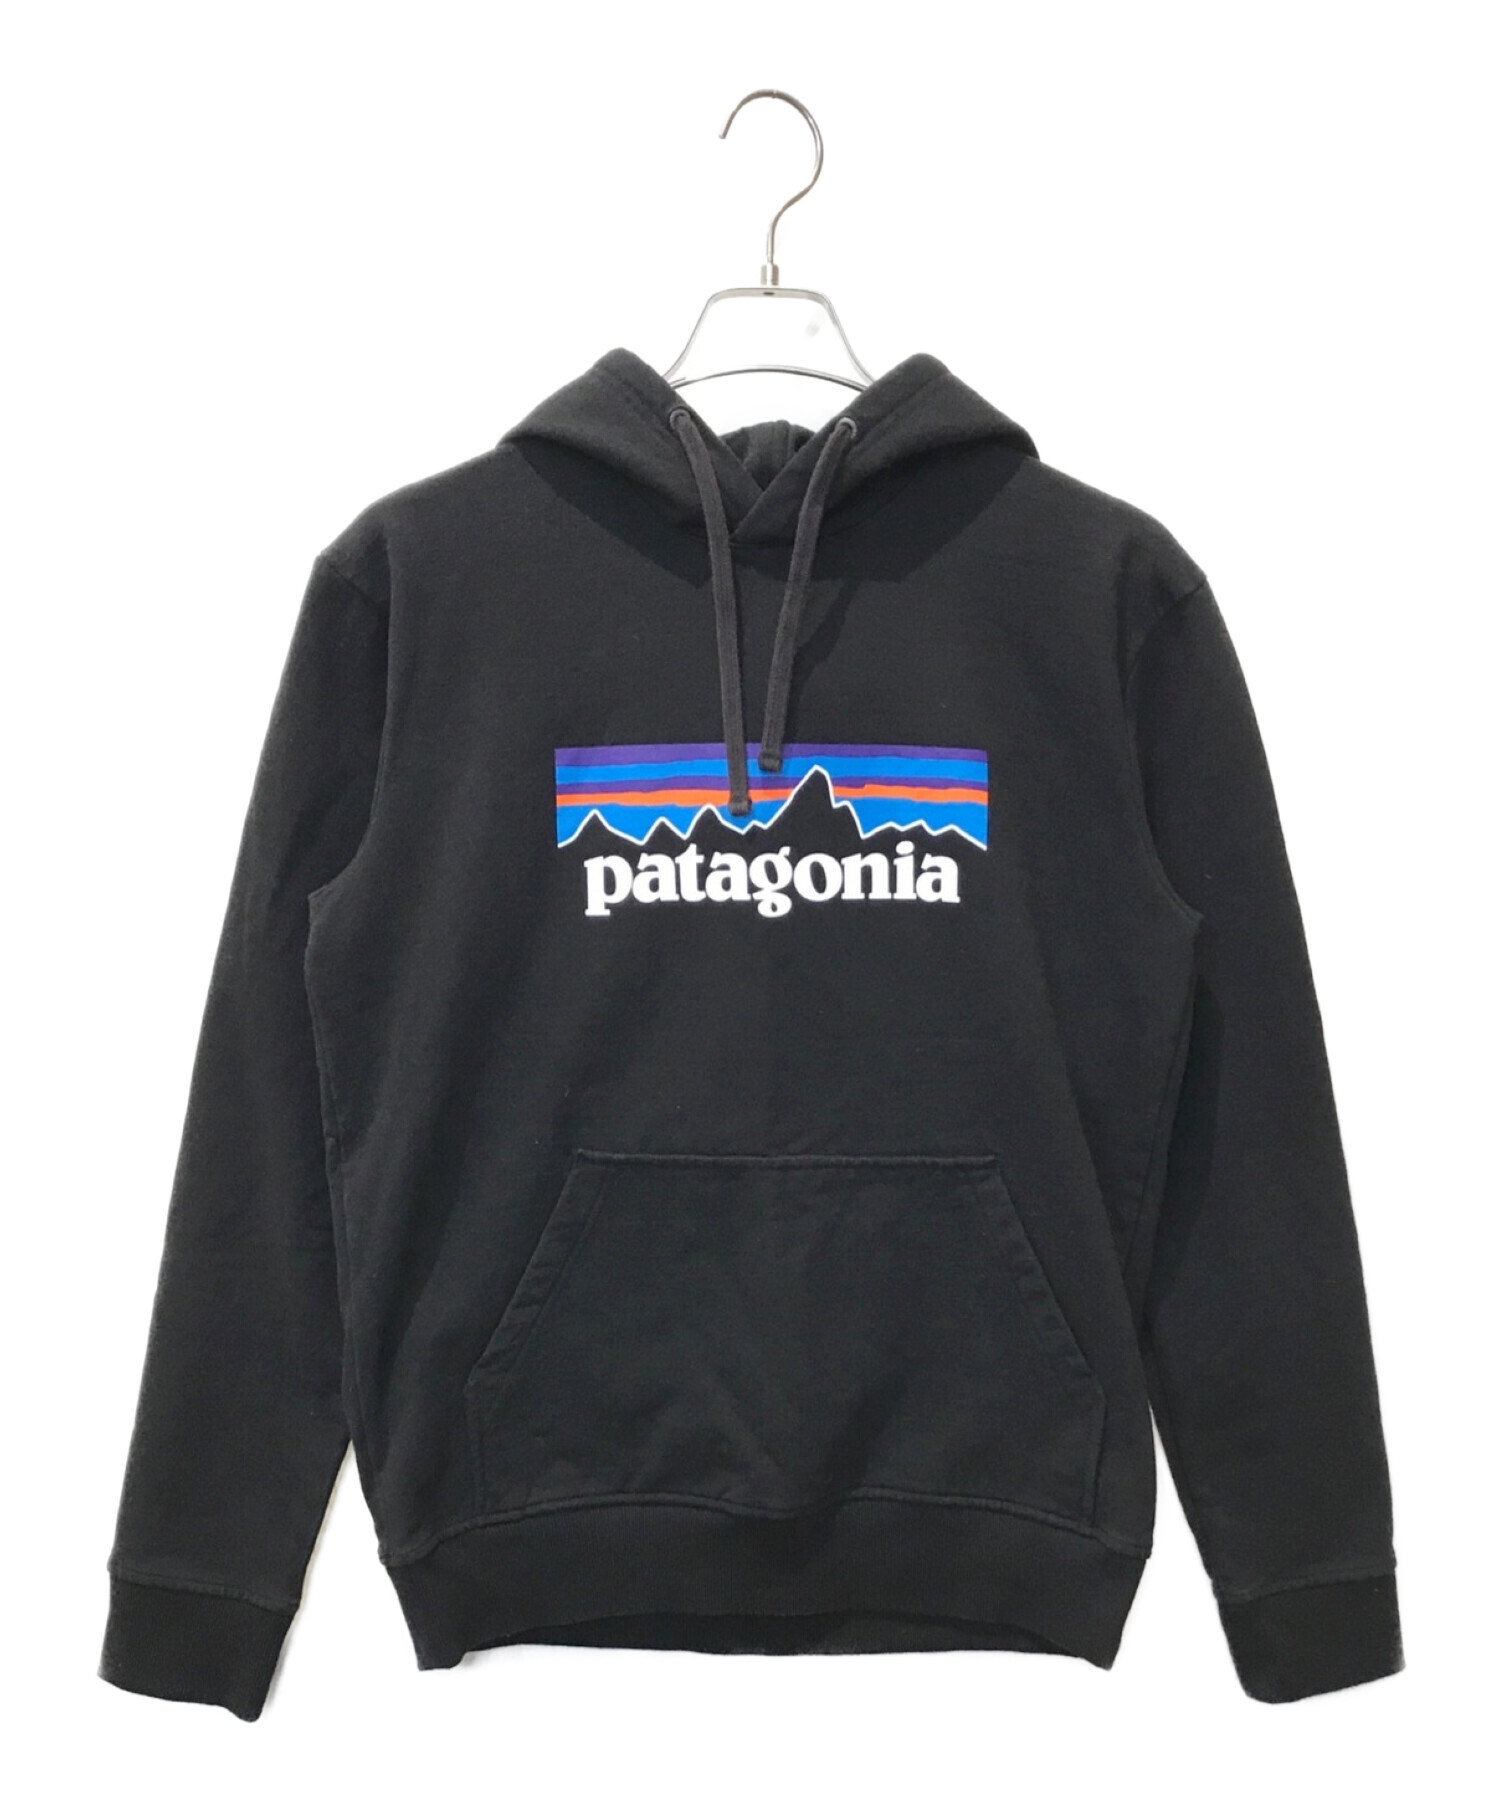 Patagonia (パタゴニア) パーカー ブラック サイズ:S